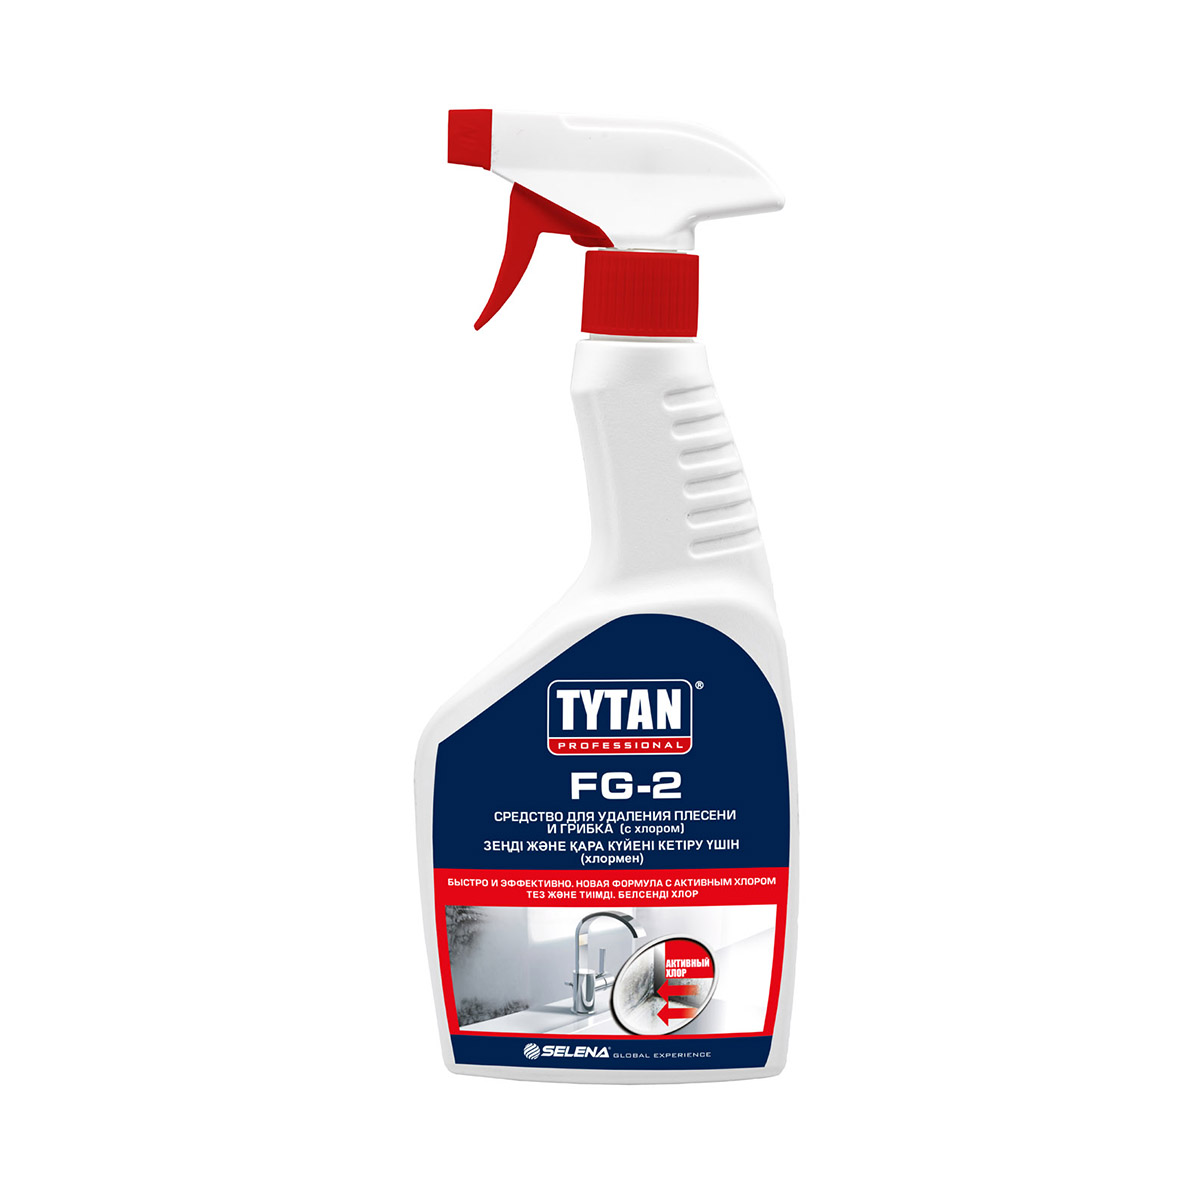 Антисептик-спрей против грибка и плесени (с хлором)  fg-2  500 мл  TYTAN professional